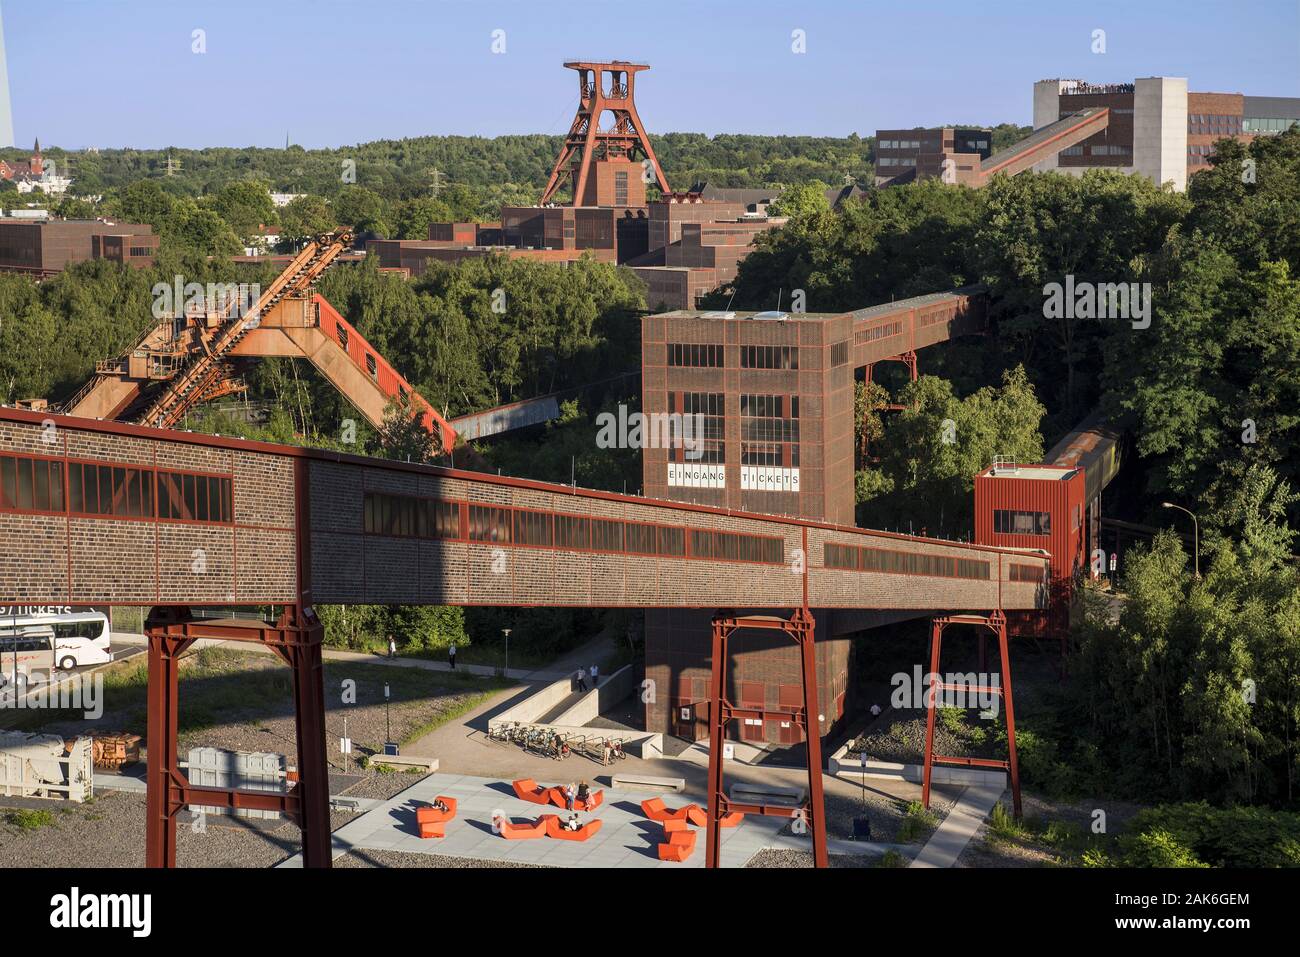 Essen: UNESCO-Welterbe Zollverein, ehemals groesste Steinkohlenzeche der Welt, Bandbruecke (Standseilbahn) zwischen Wiegeturm und Mischanlage auf dem Foto Stock